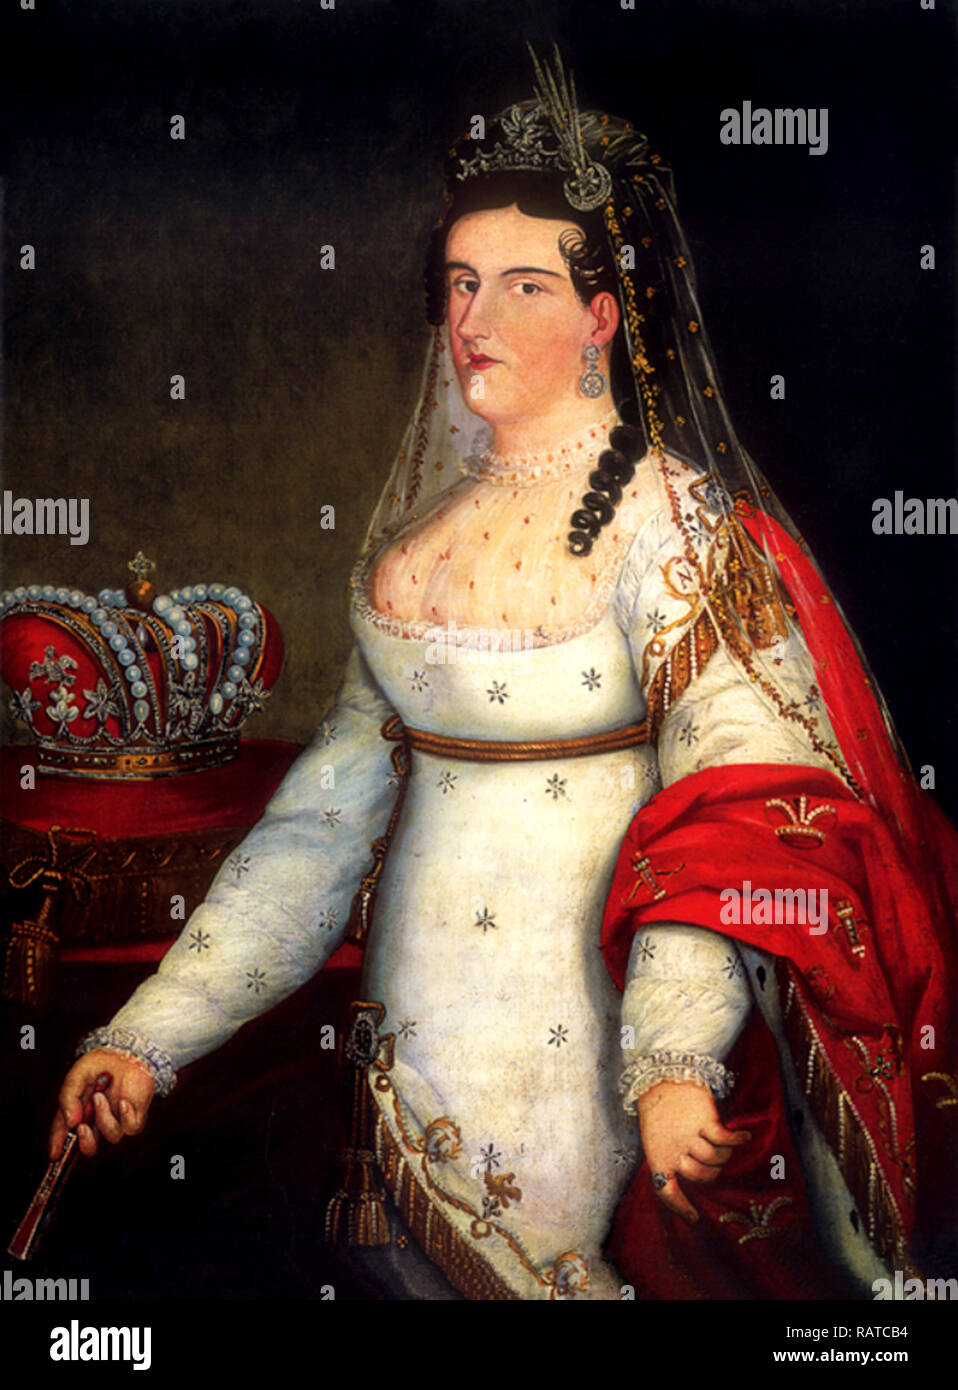 Ana María Josefa Ramona de Huarte y Muñiz (1786 - 1861) première Impératrice du Mexique. Elle était l'épouse l'Empereur Agustín de Iturbide du Mexique. Banque D'Images